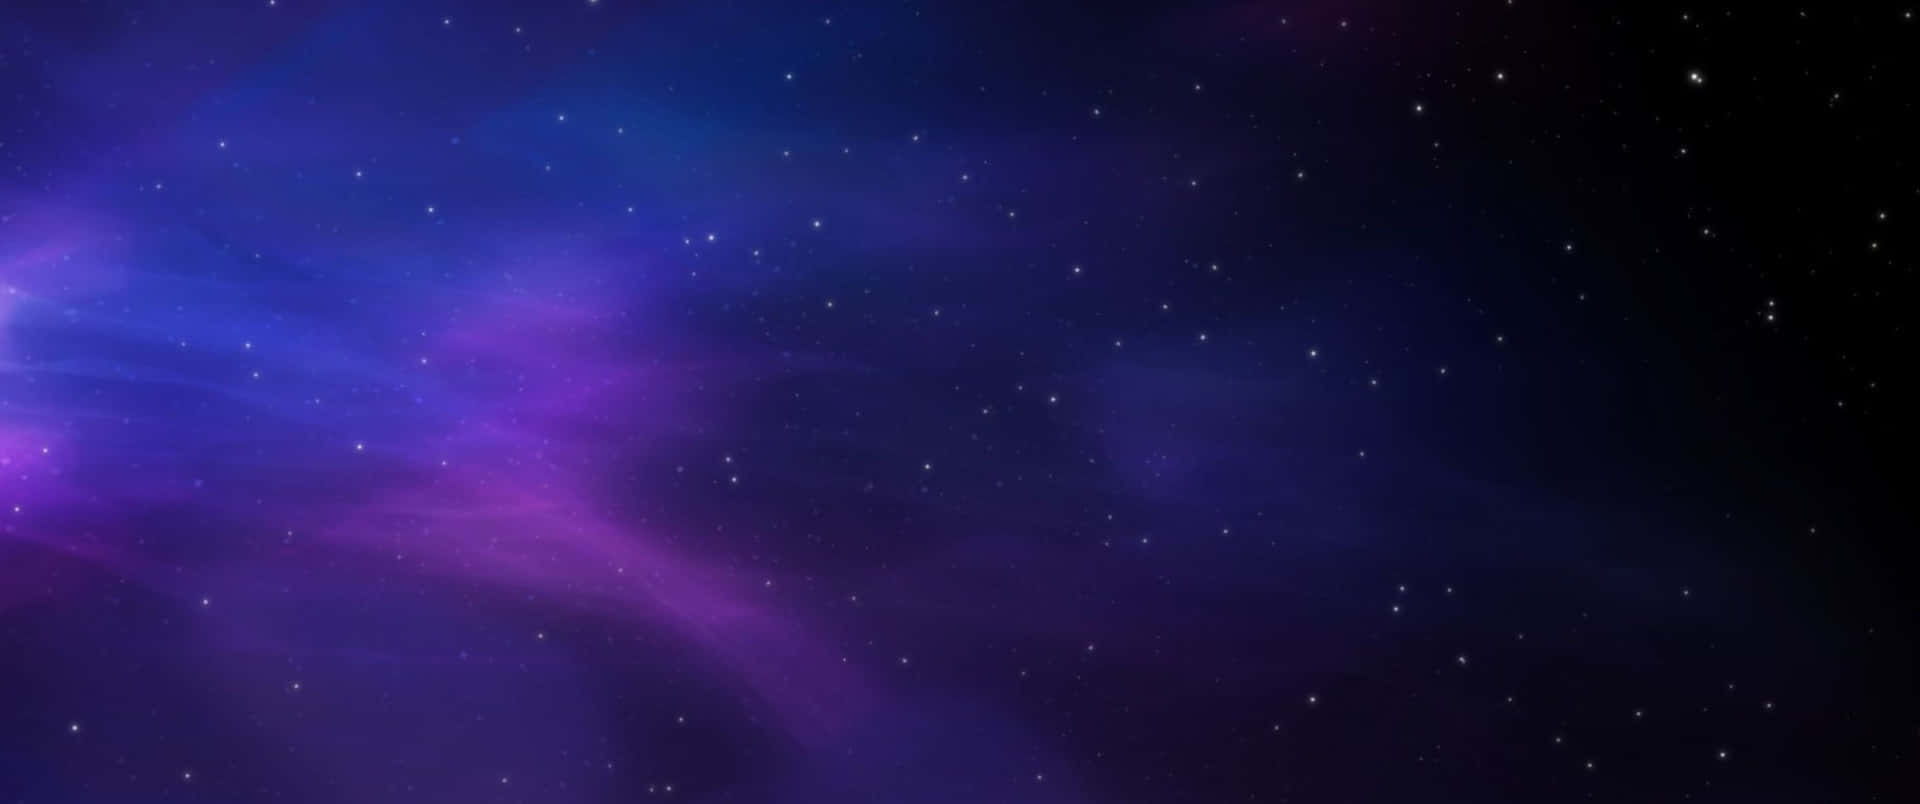 Unosfondo Spaziale Viola E Blu Con Stelle